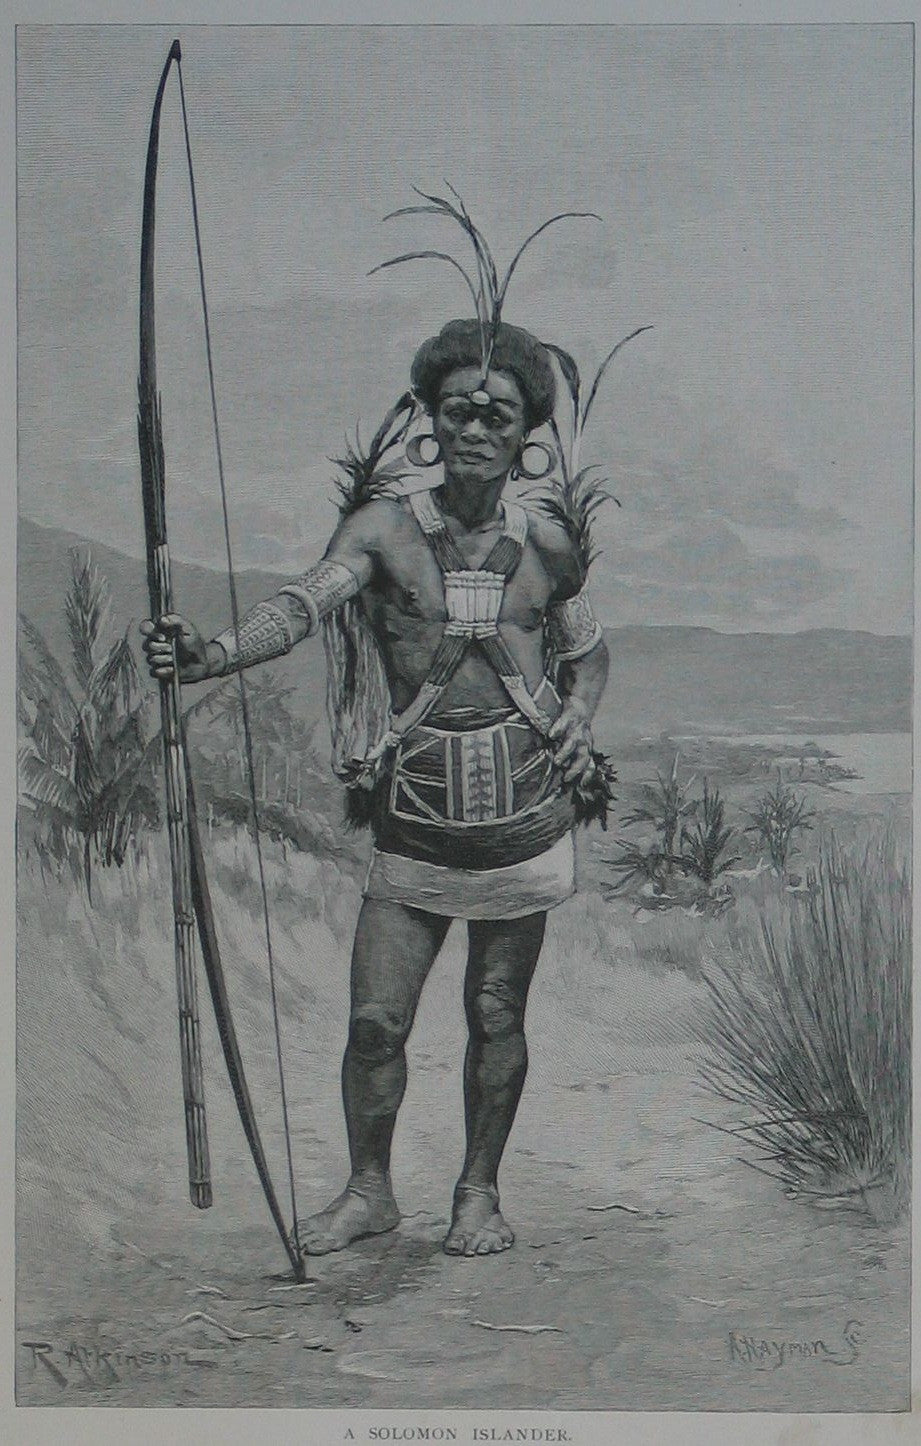 A Solomon Islander